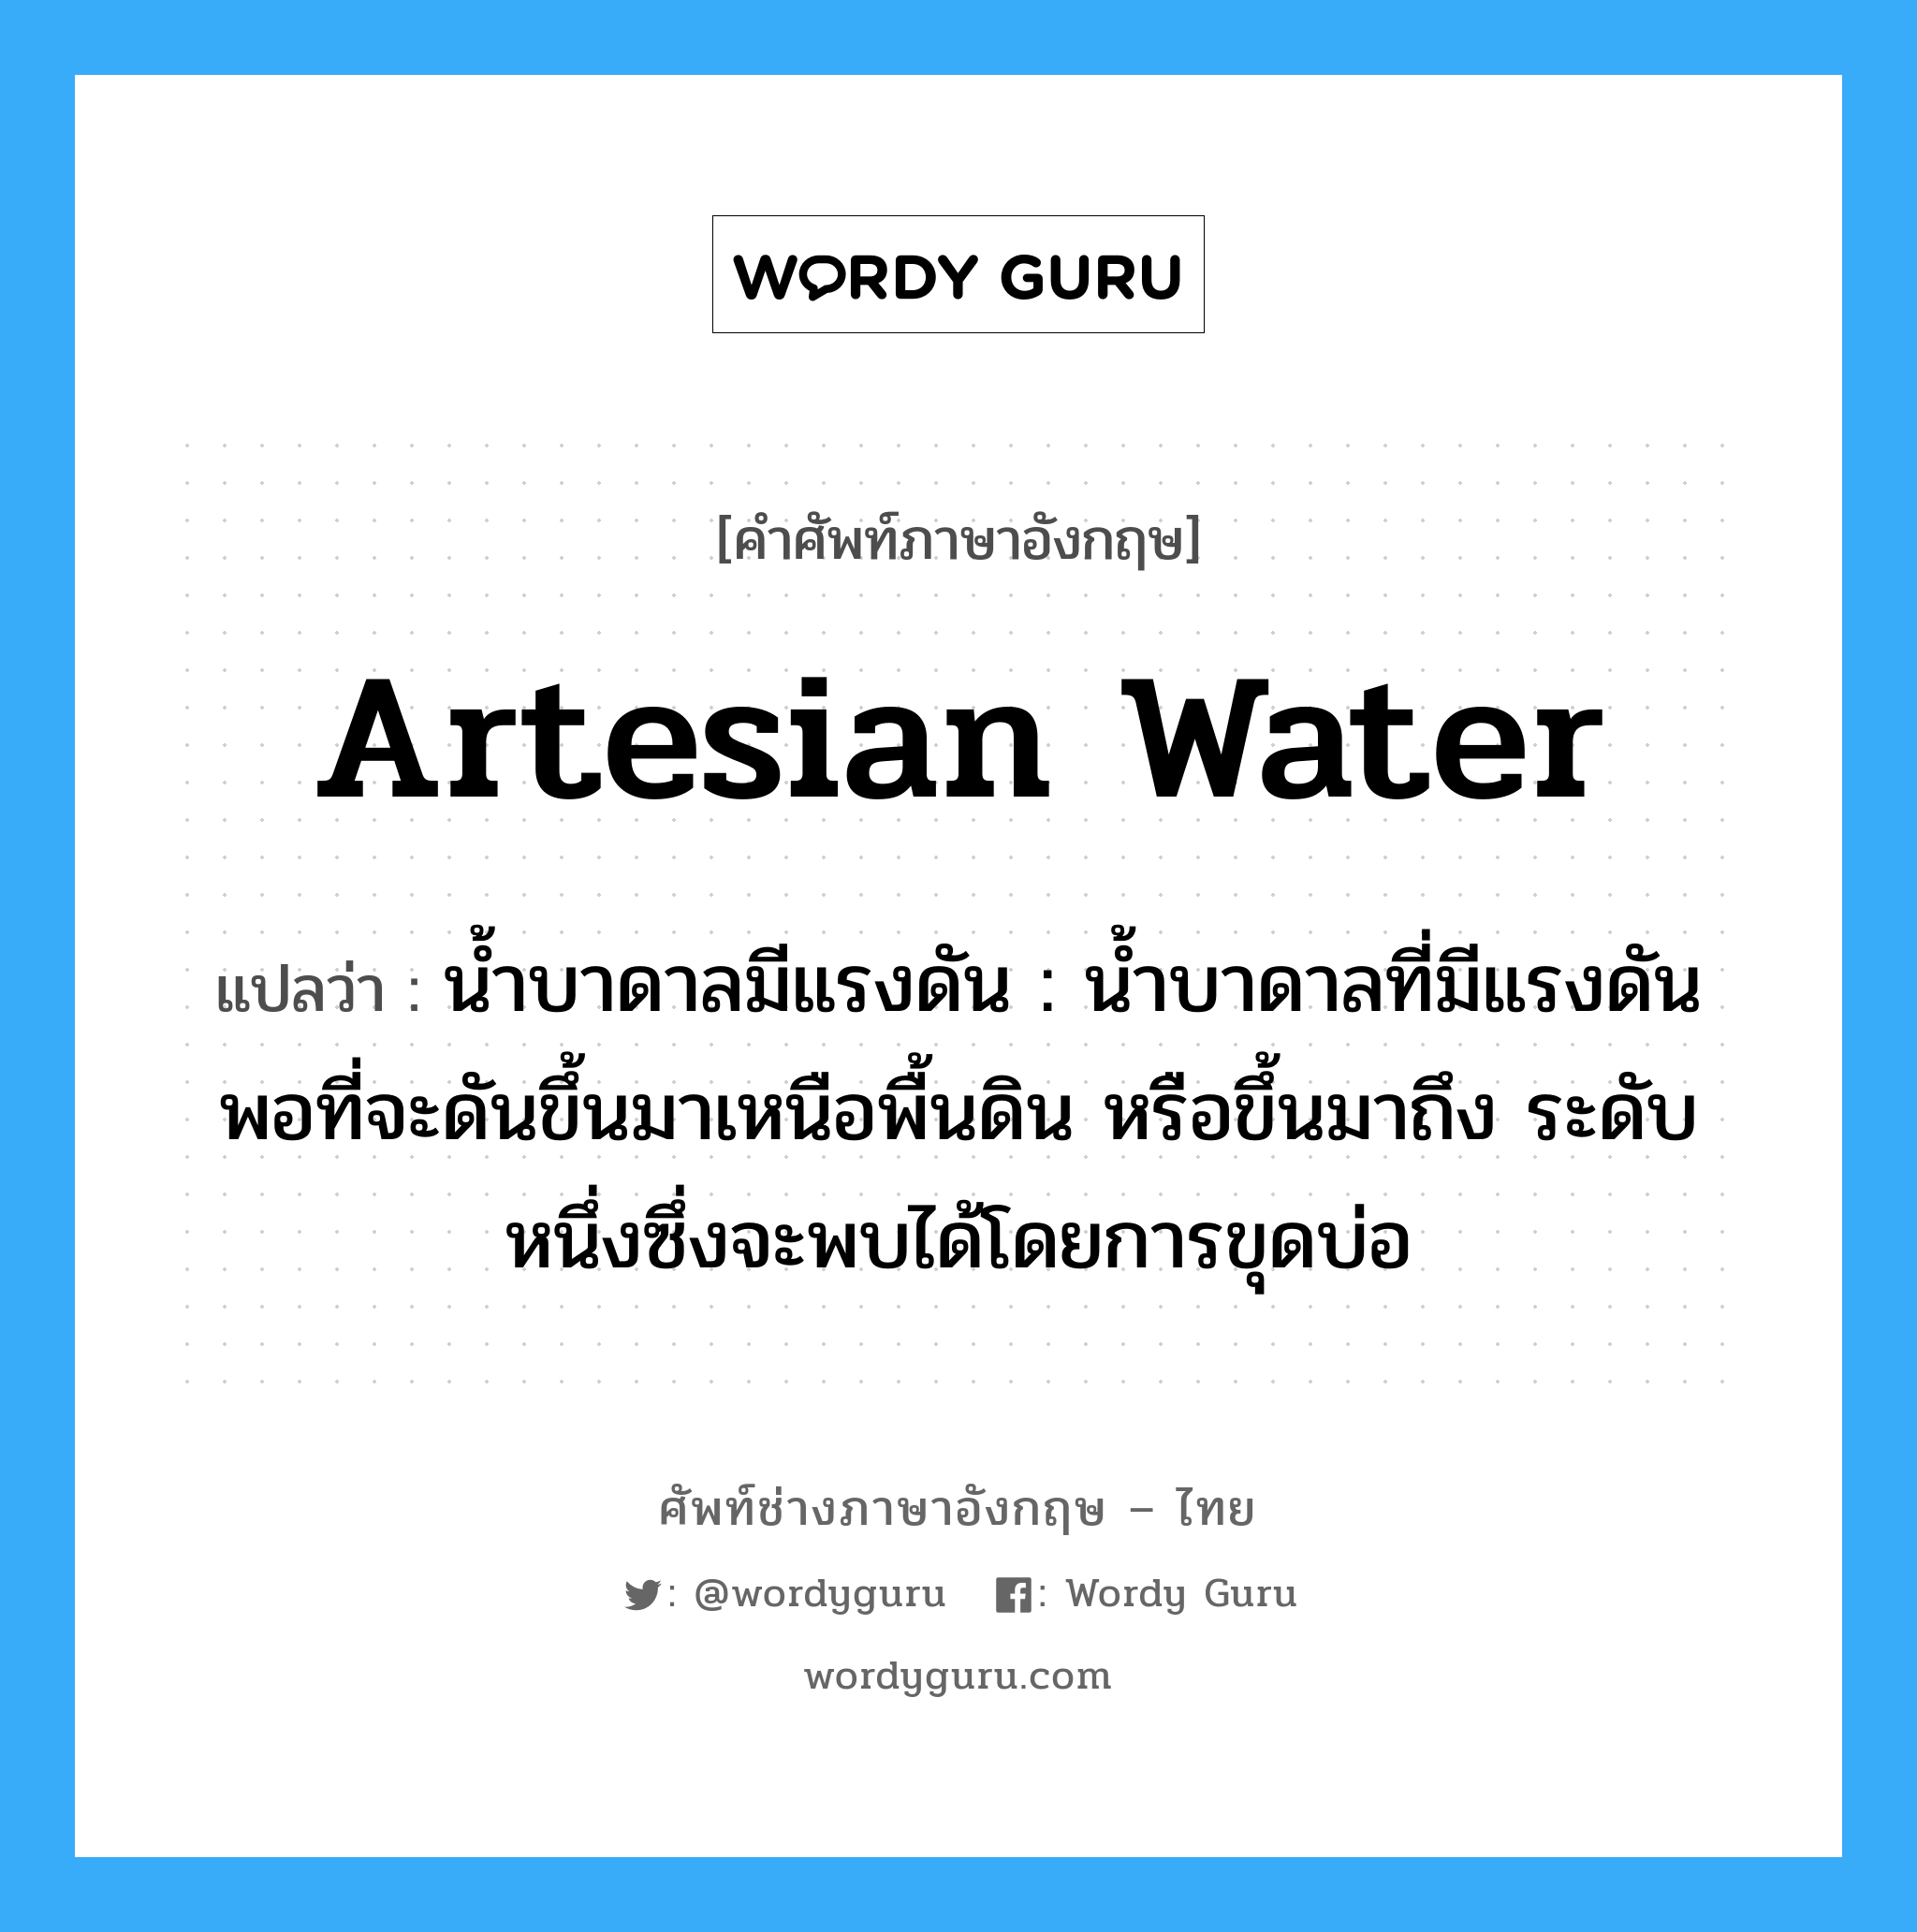 artesian water แปลว่า?, คำศัพท์ช่างภาษาอังกฤษ - ไทย artesian water คำศัพท์ภาษาอังกฤษ artesian water แปลว่า น้ำบาดาลมีแรงดัน : น้ำบาดาลที่มีแรงดันพอที่จะดันขึ้นมาเหนือพื้นดิน หรือขึ้นมาถึง ระดับหนึ่งซึ่งจะพบได้โดยการขุดบ่อ